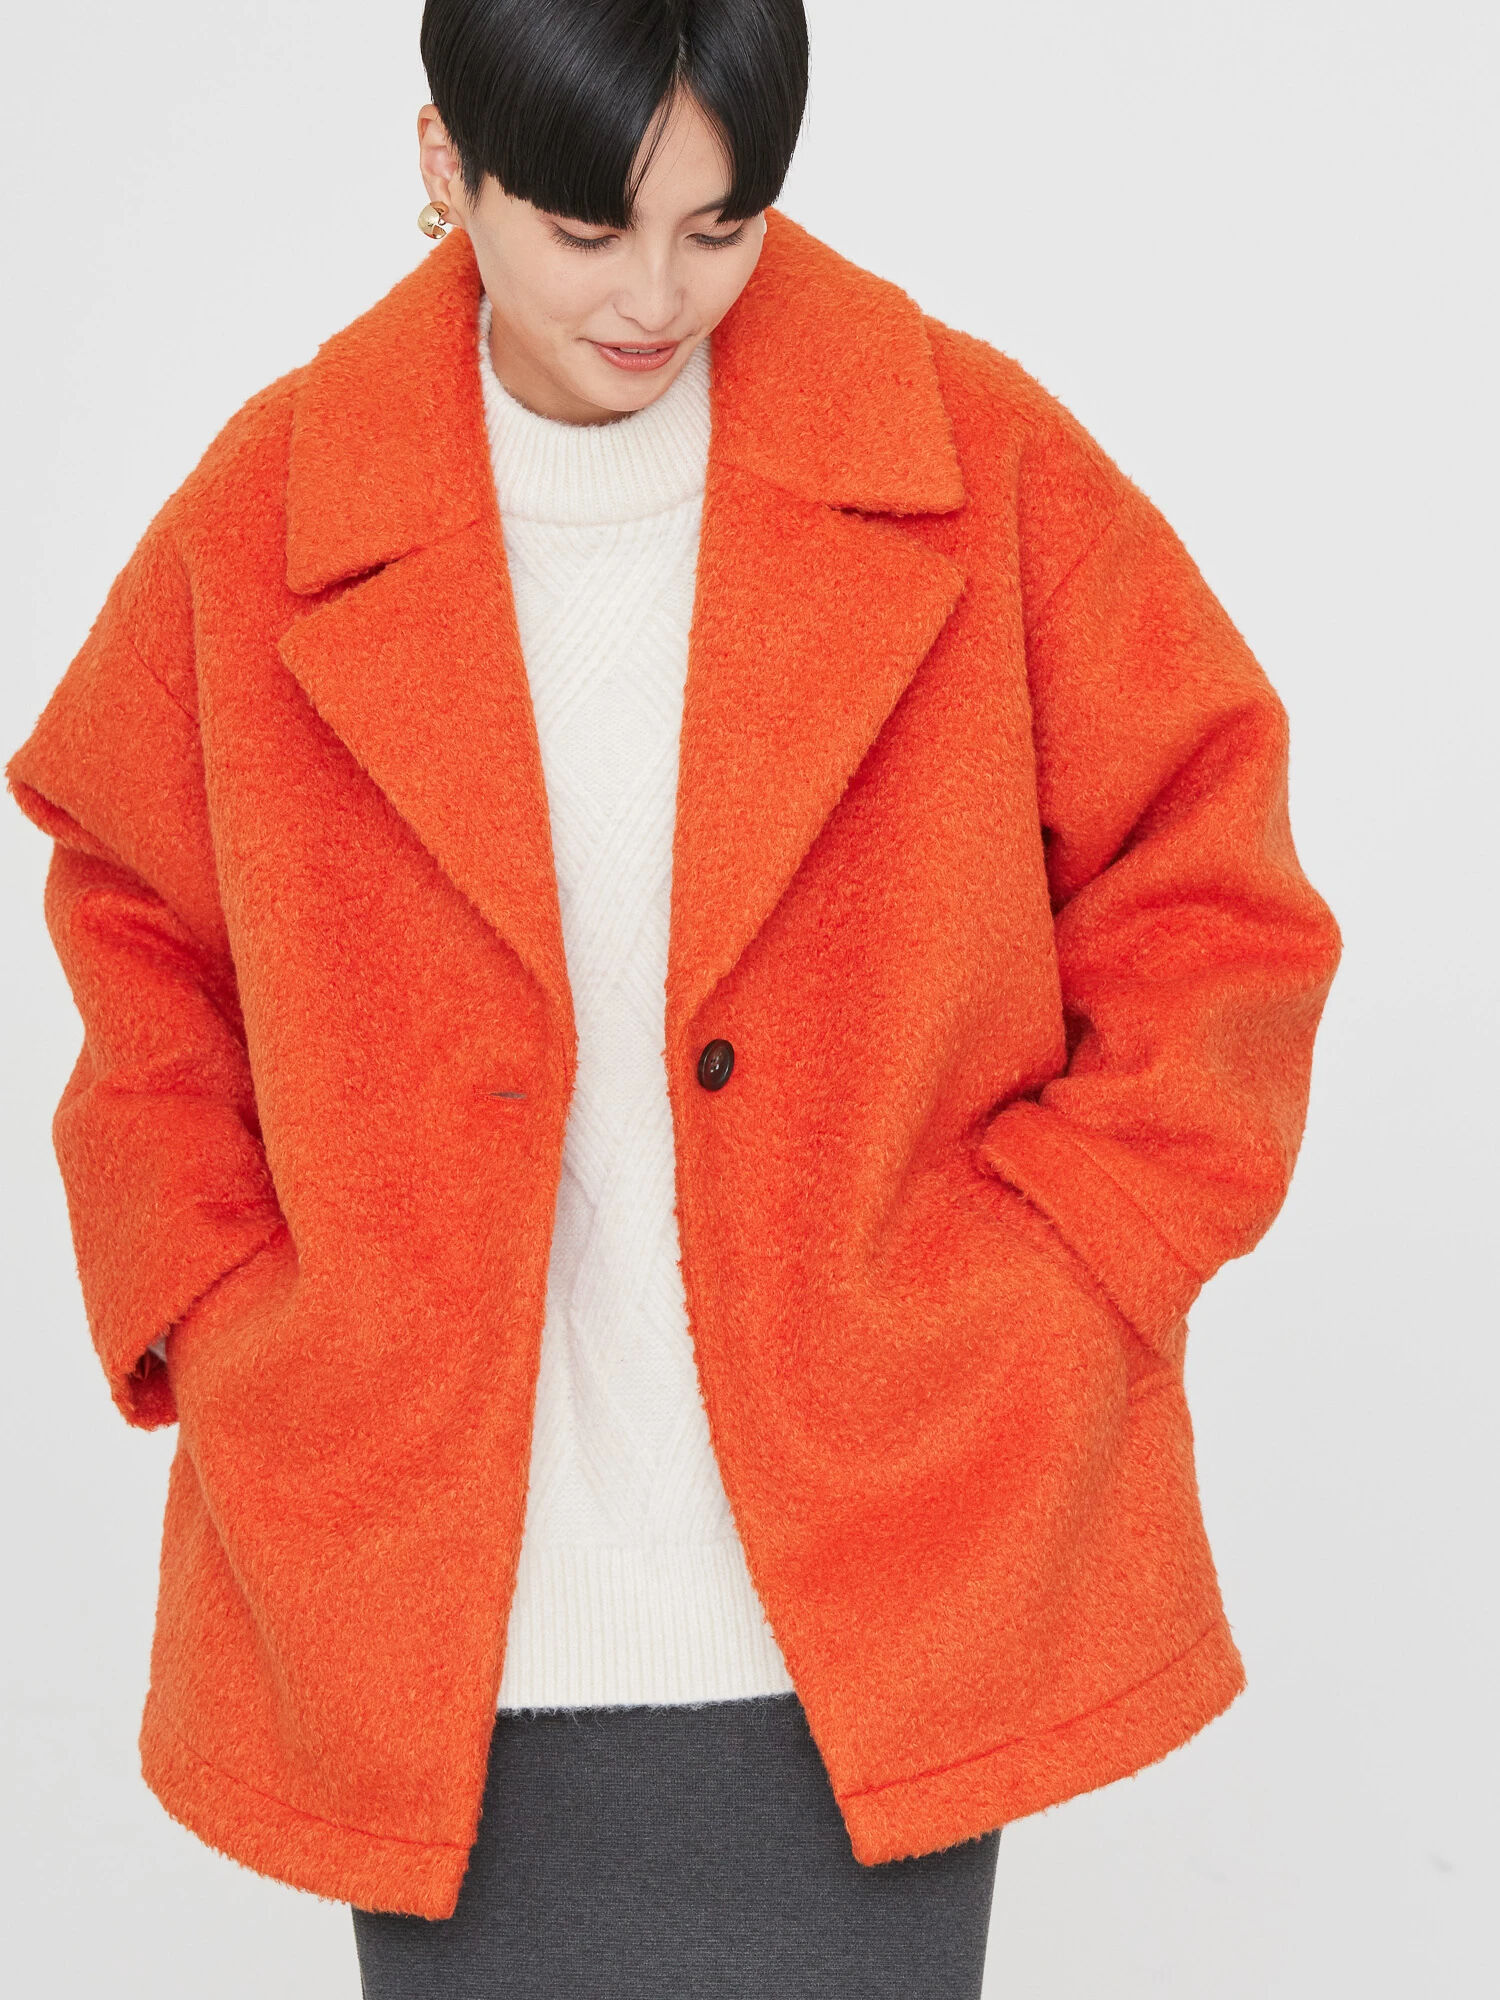 シングル コート ウール コーラルオレンジ45cm袖丈